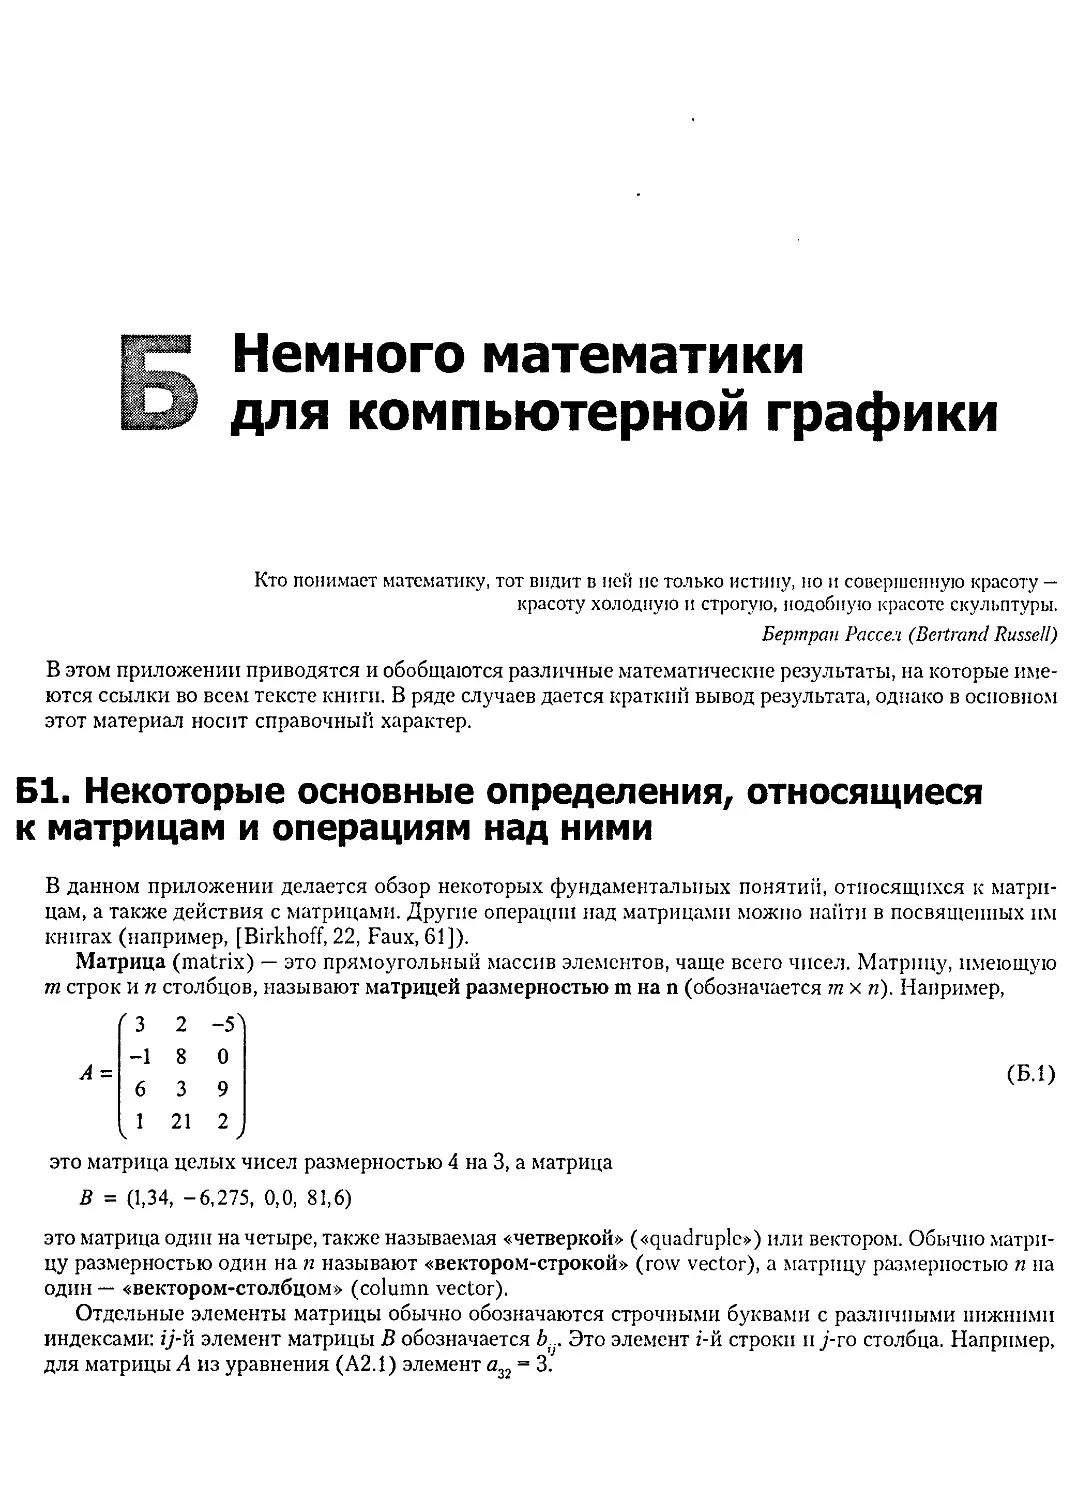 Приложение Б. Немного математики для компьютерной графики